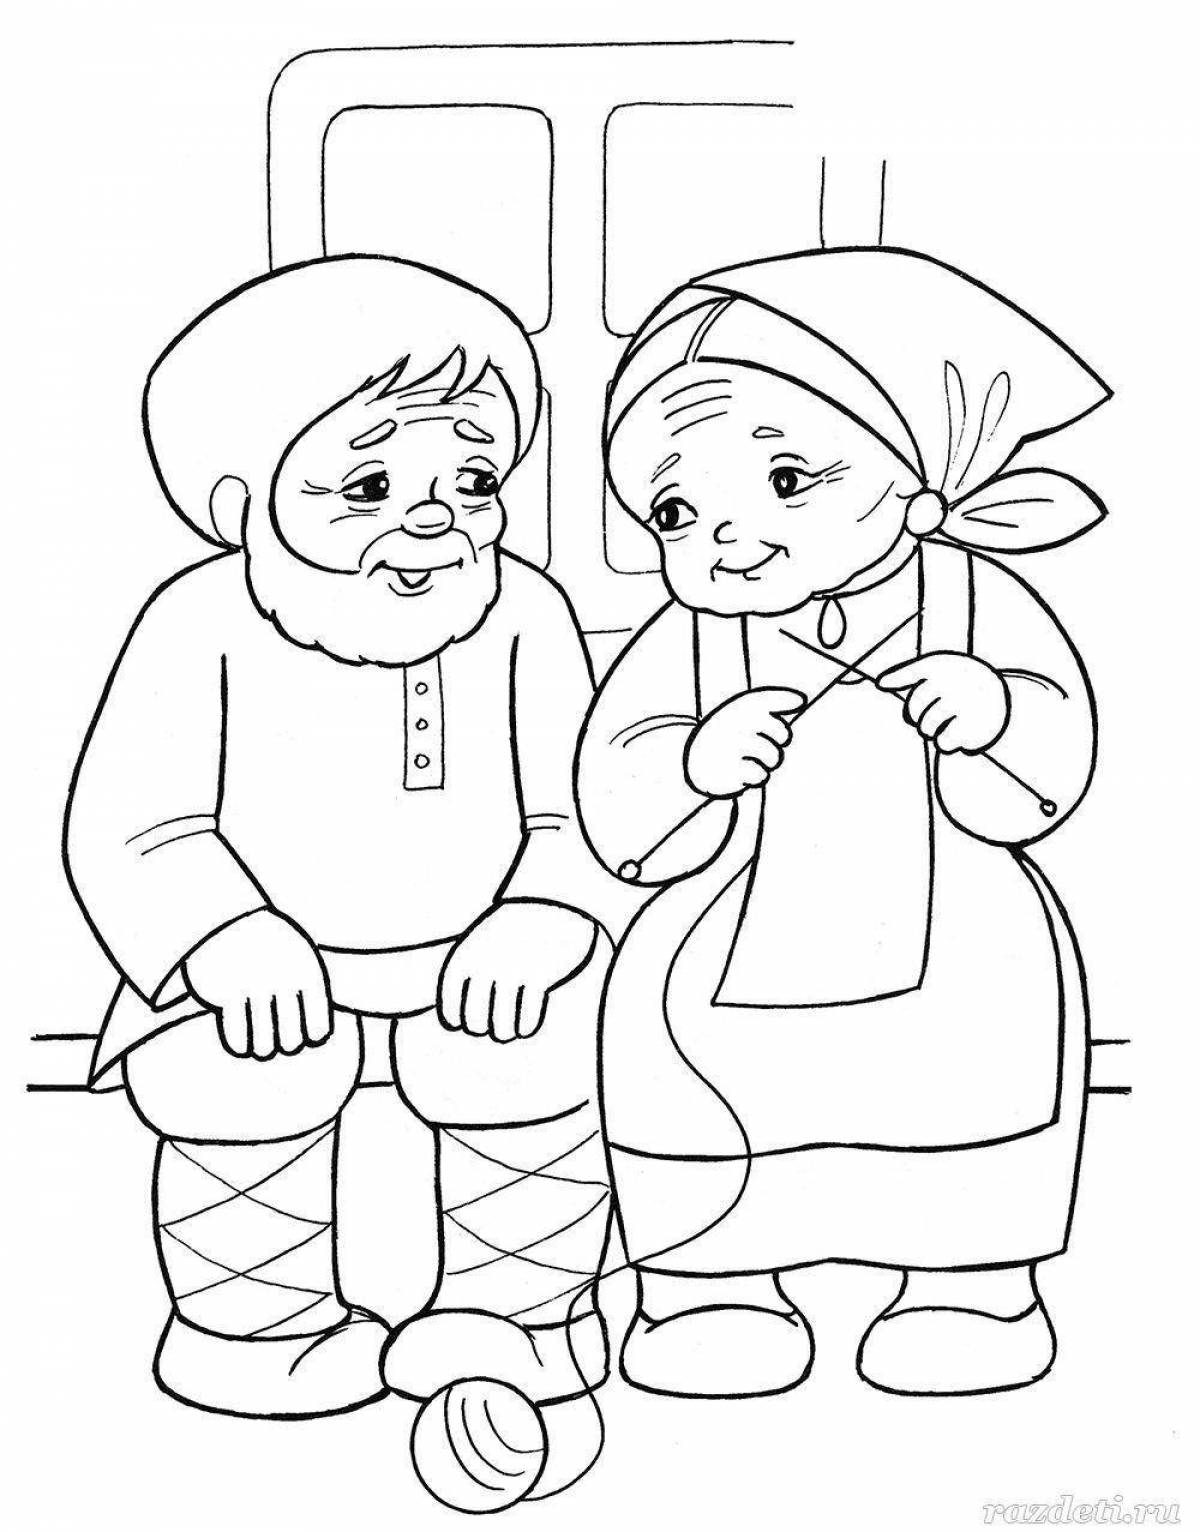 Раскраска Дед Мороз и Снегурочка Феникс-Премьер - купить с доставкой на дом в СберМаркет